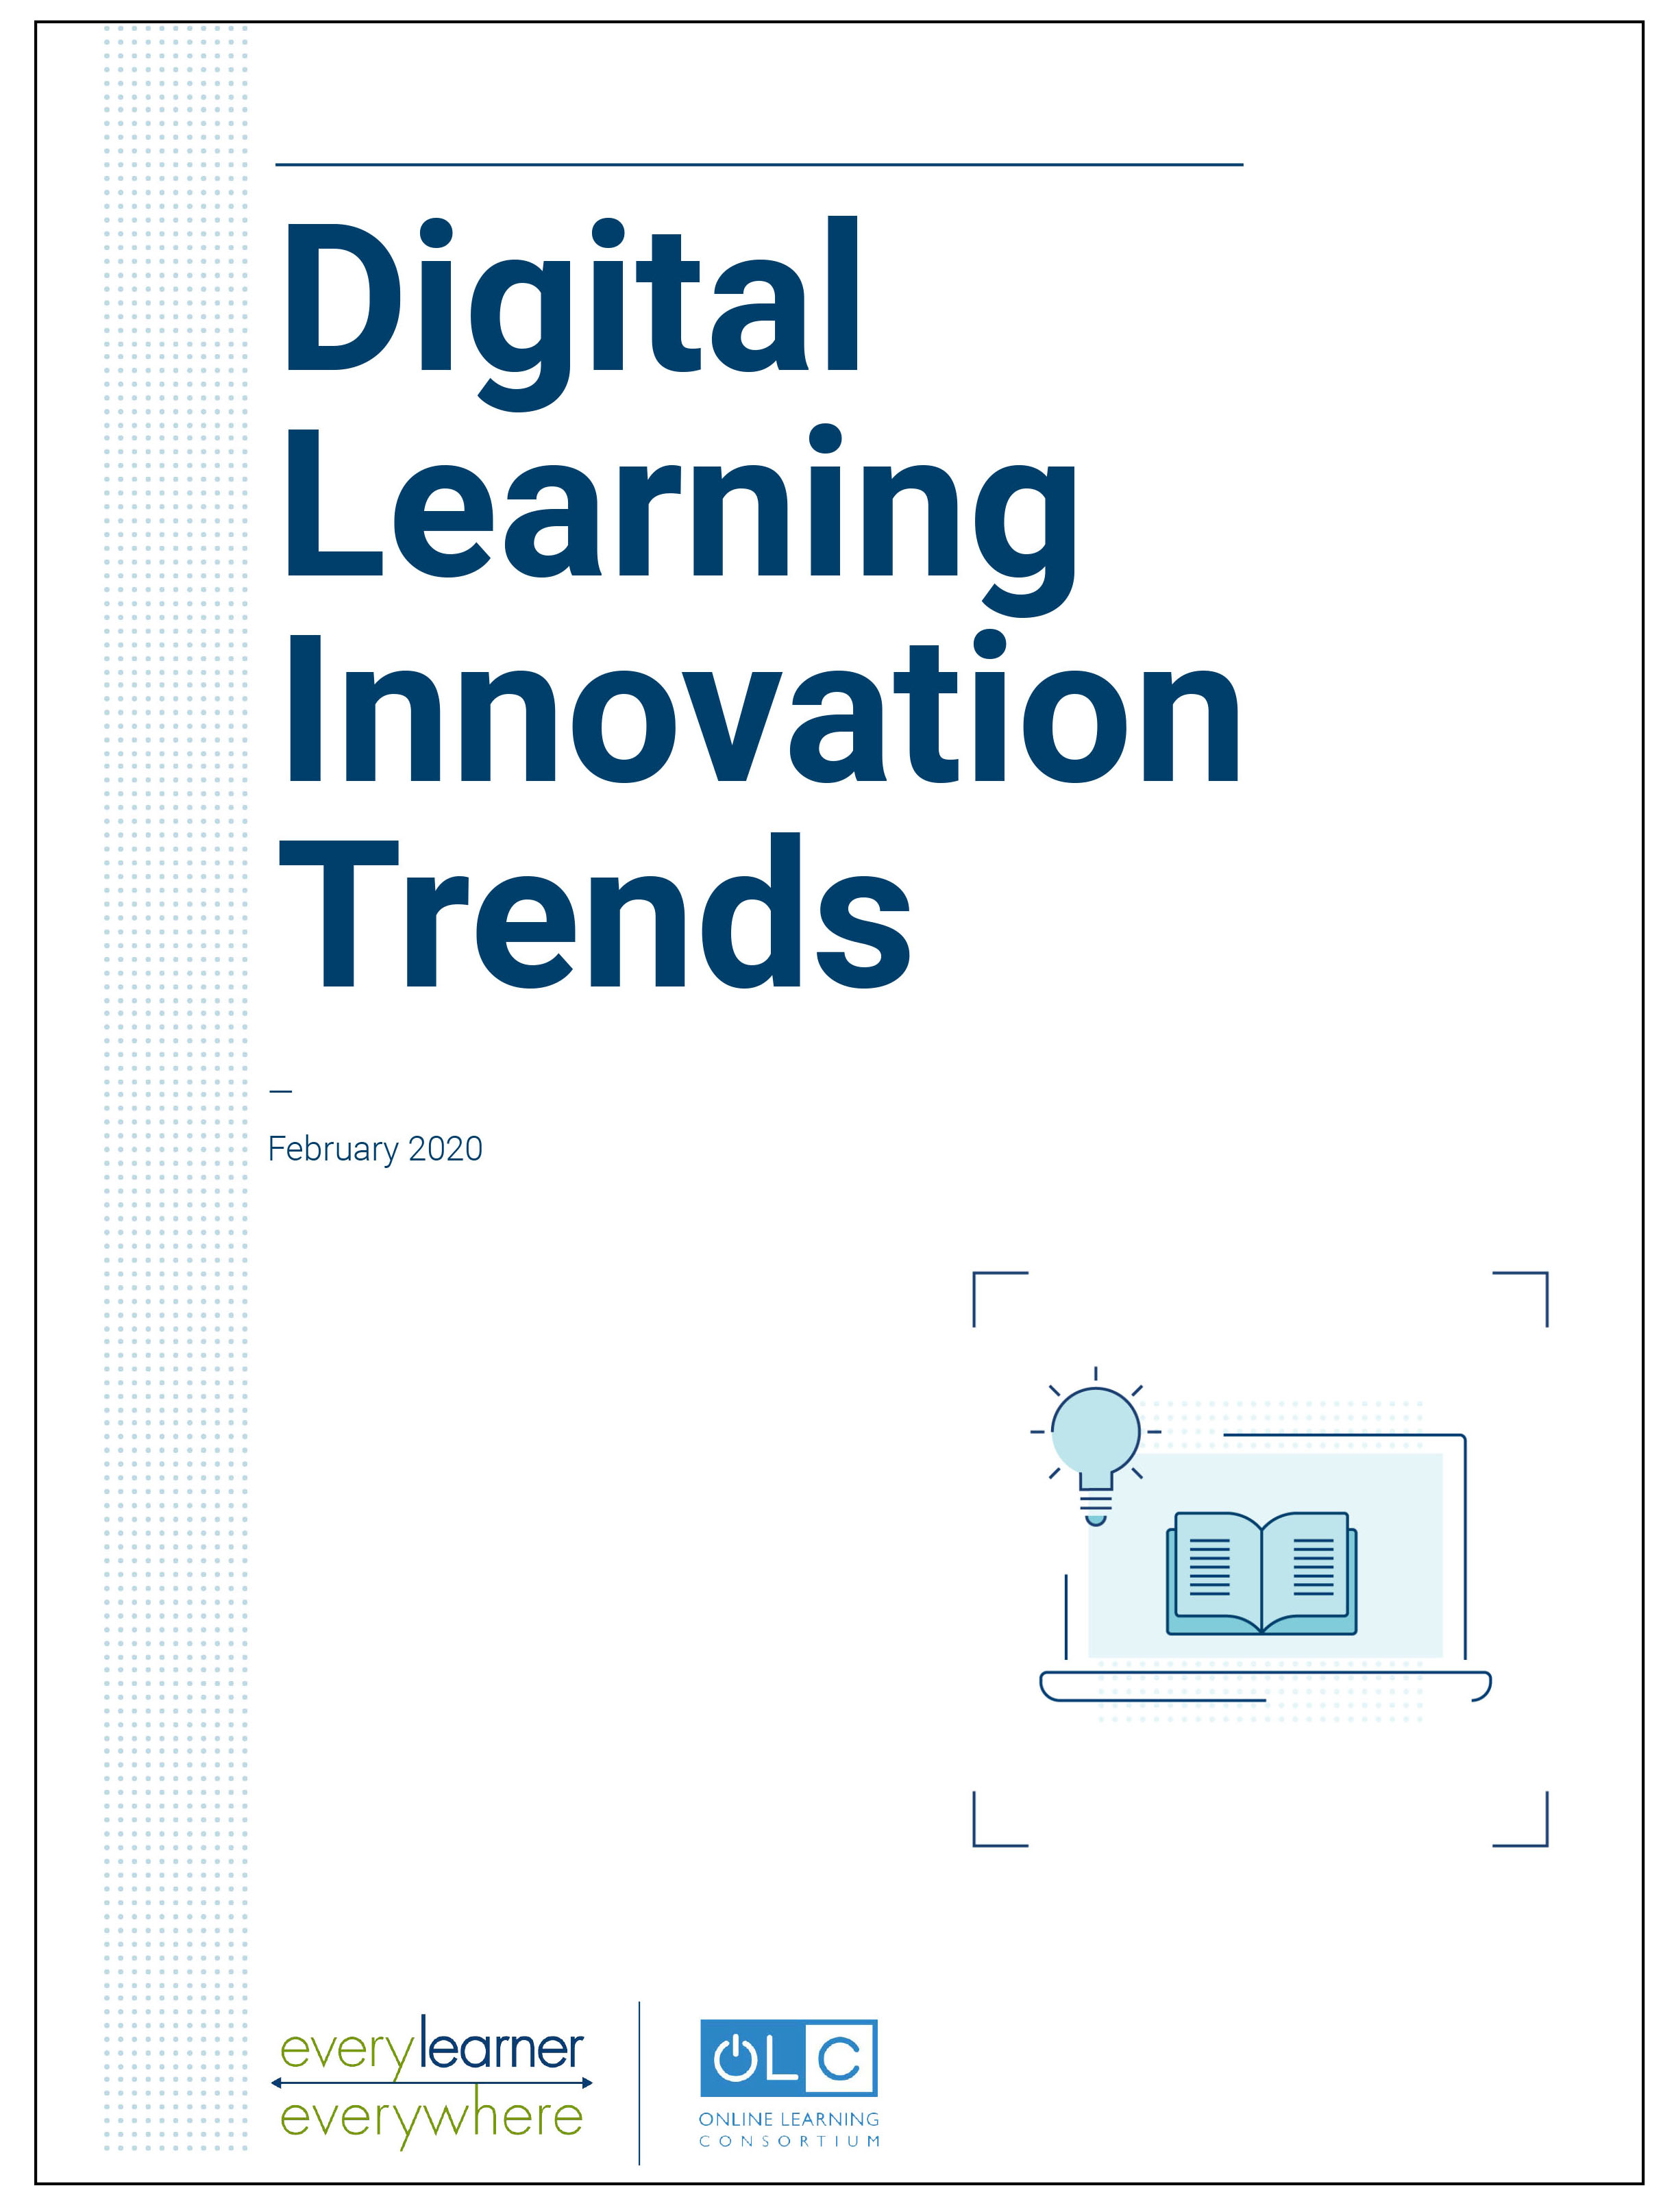 Digital Learning Innovation Trends